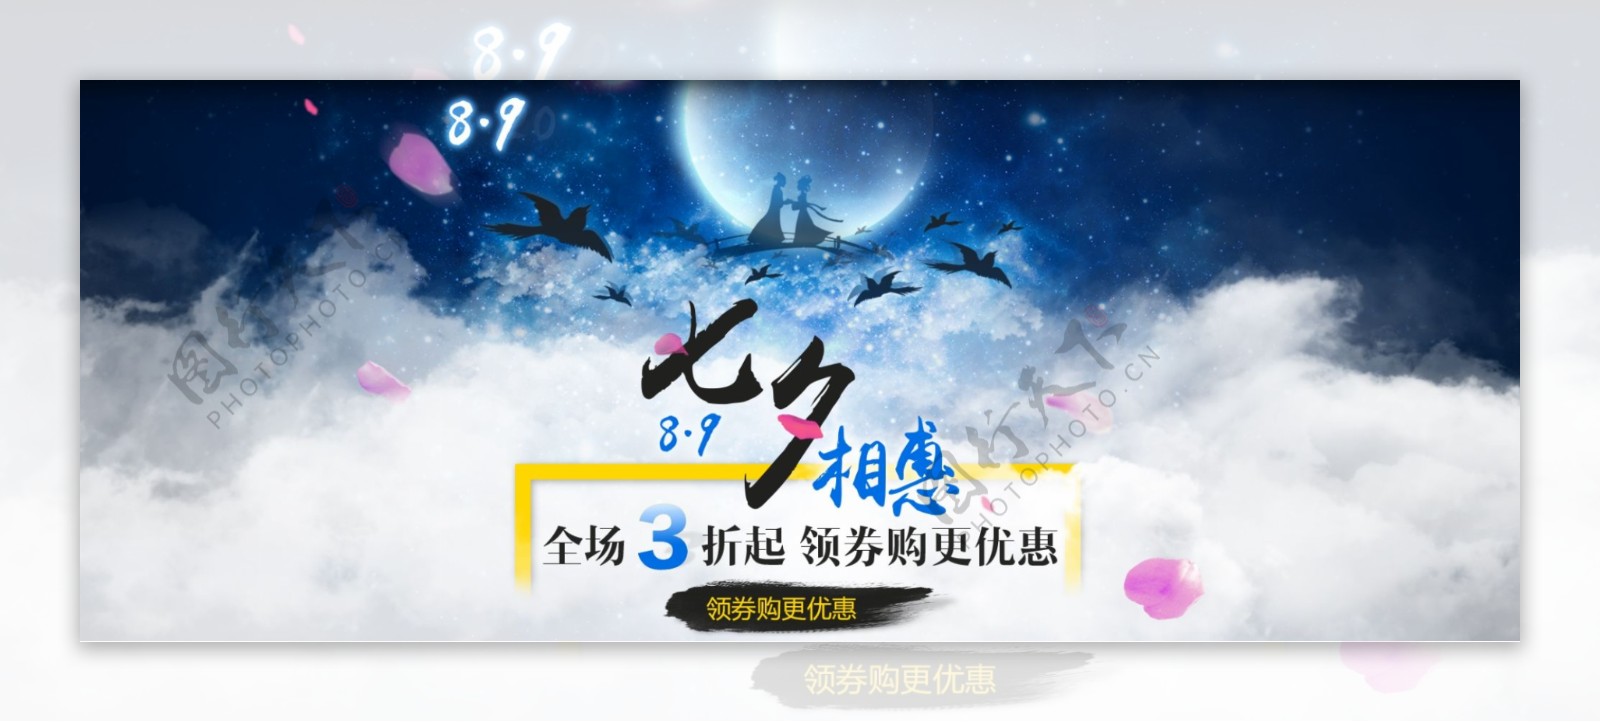 淘宝天猫七夕情人节促销活动海报